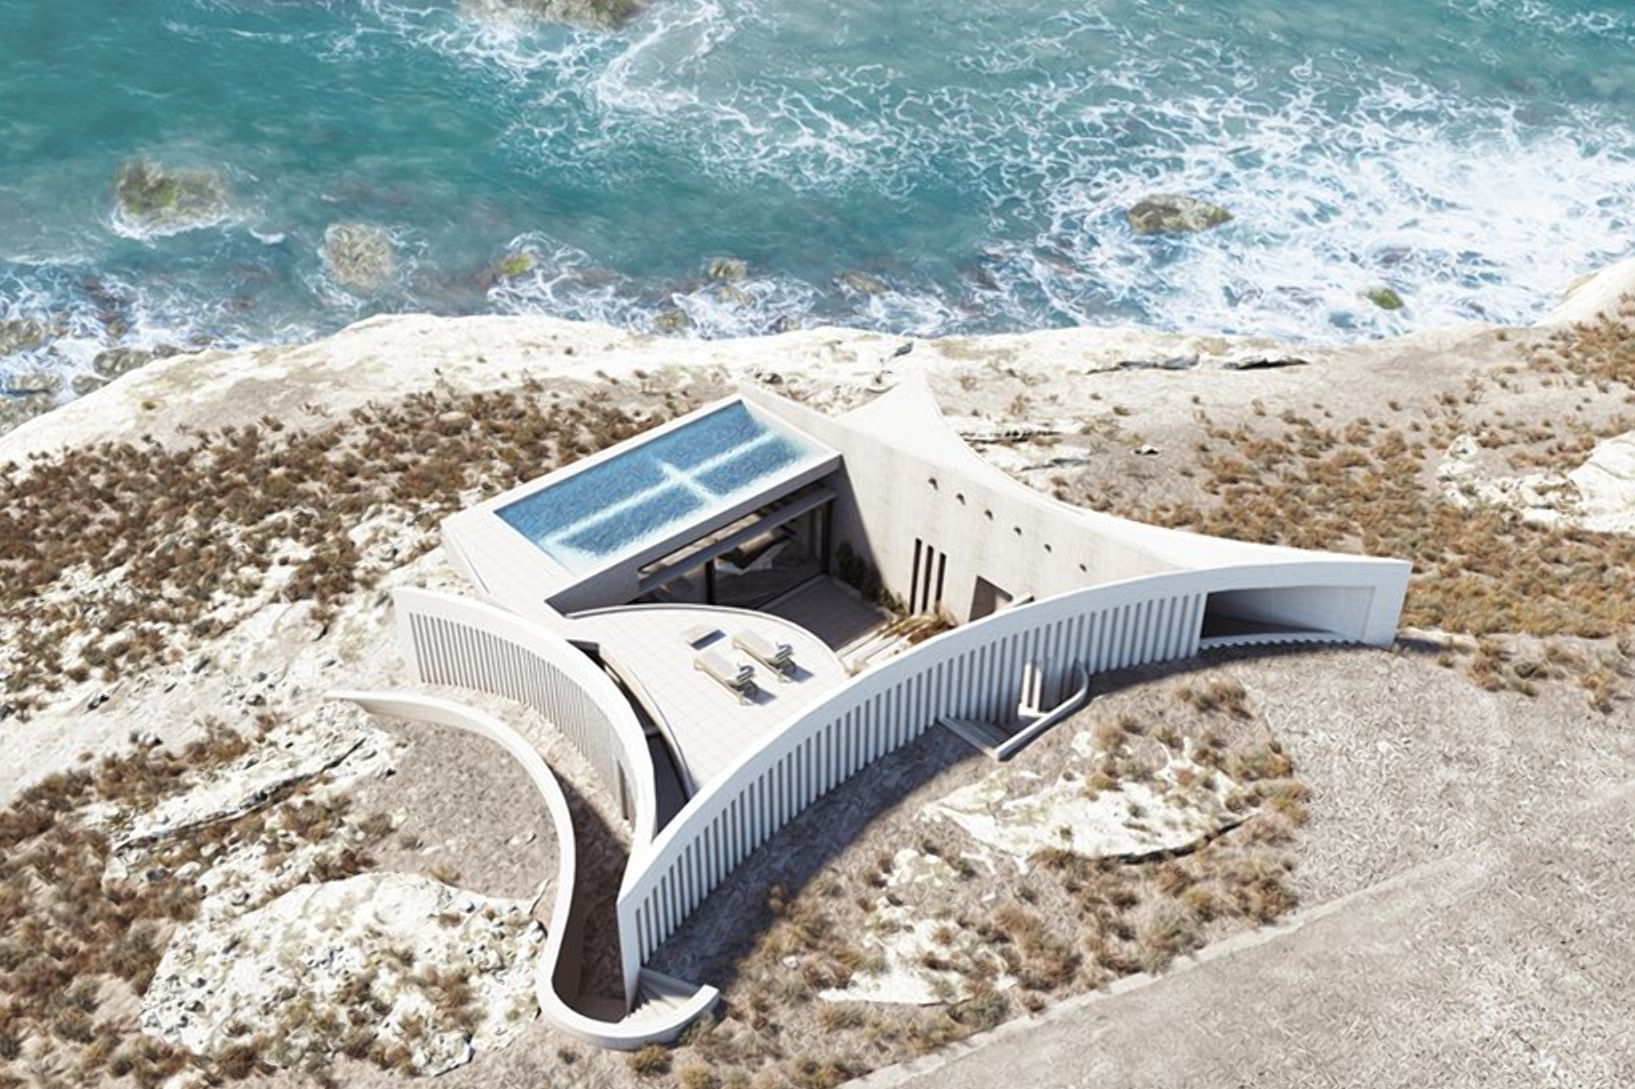 Геометричний дім: фото незвичного будинку на грецькому березі